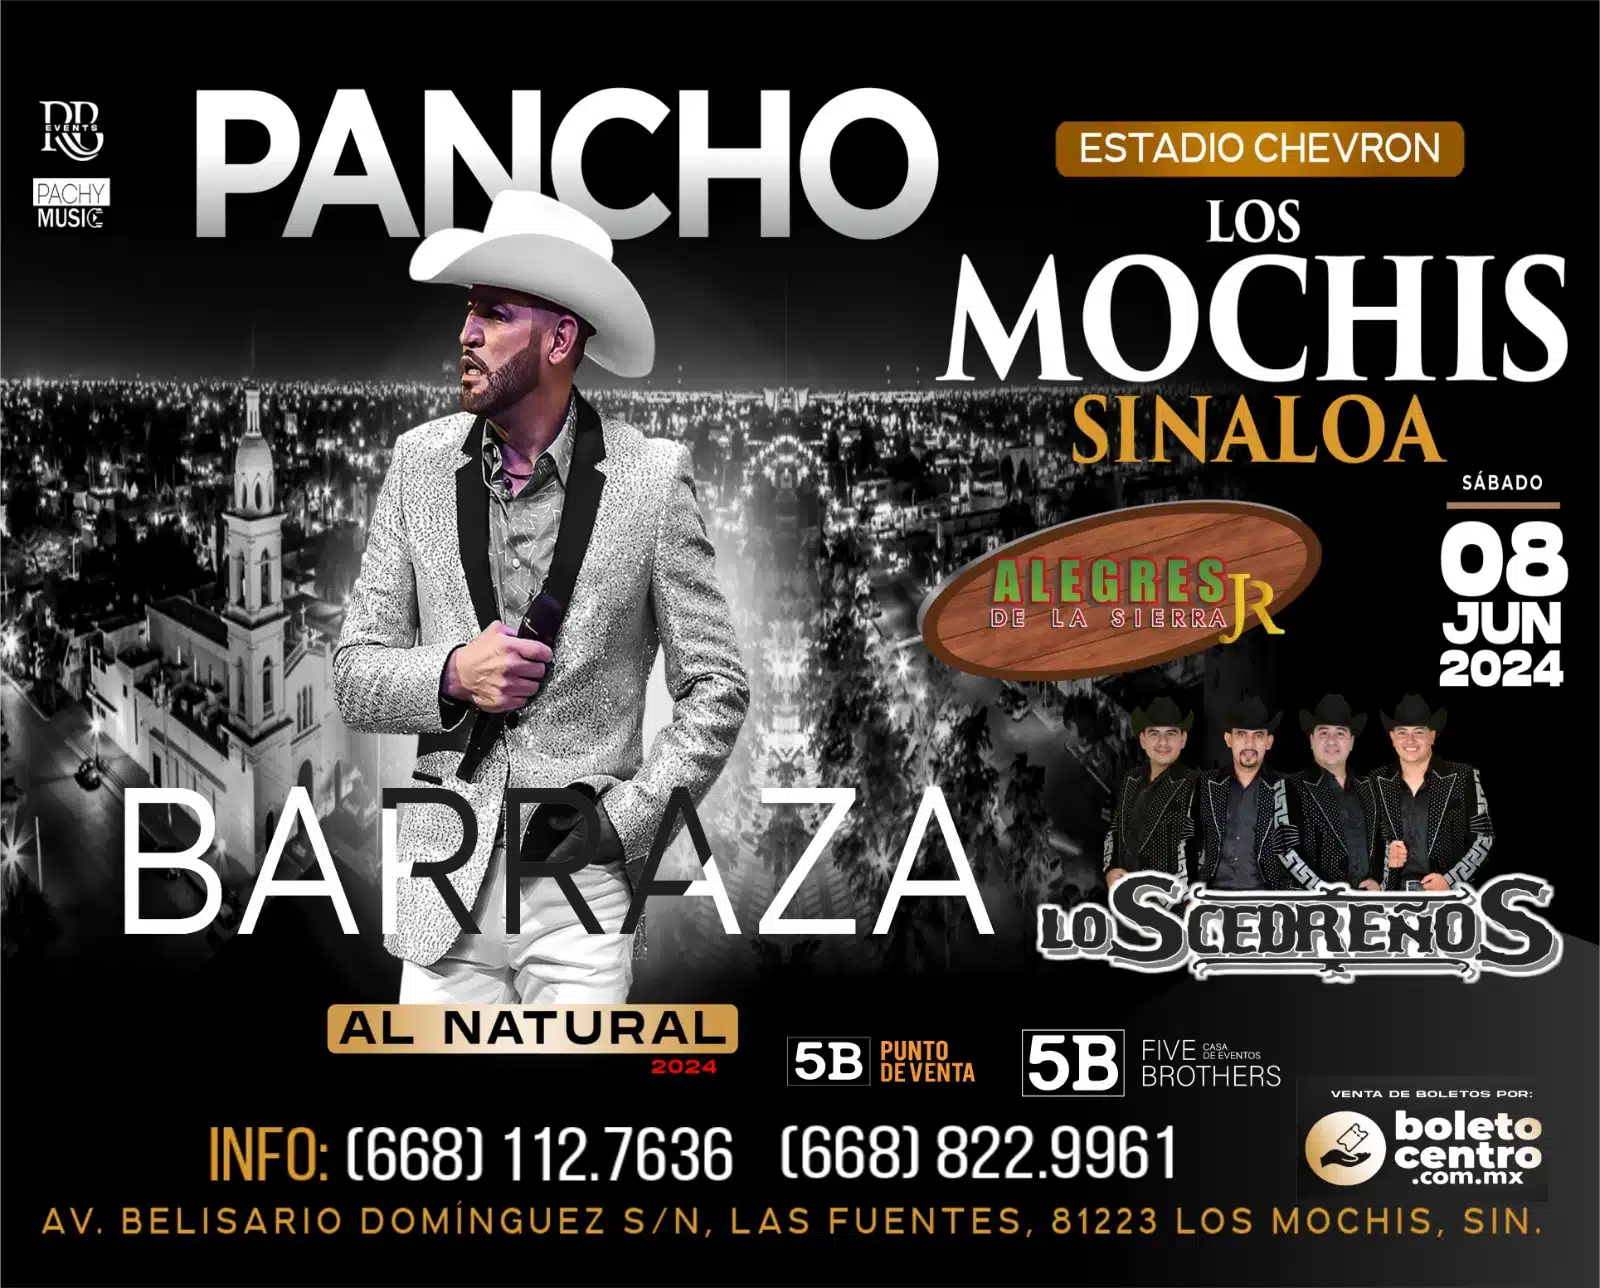 No te pierdas de la presentación de Pancho Barraza con su “Al Natural” tour 2024, en Los Mochis